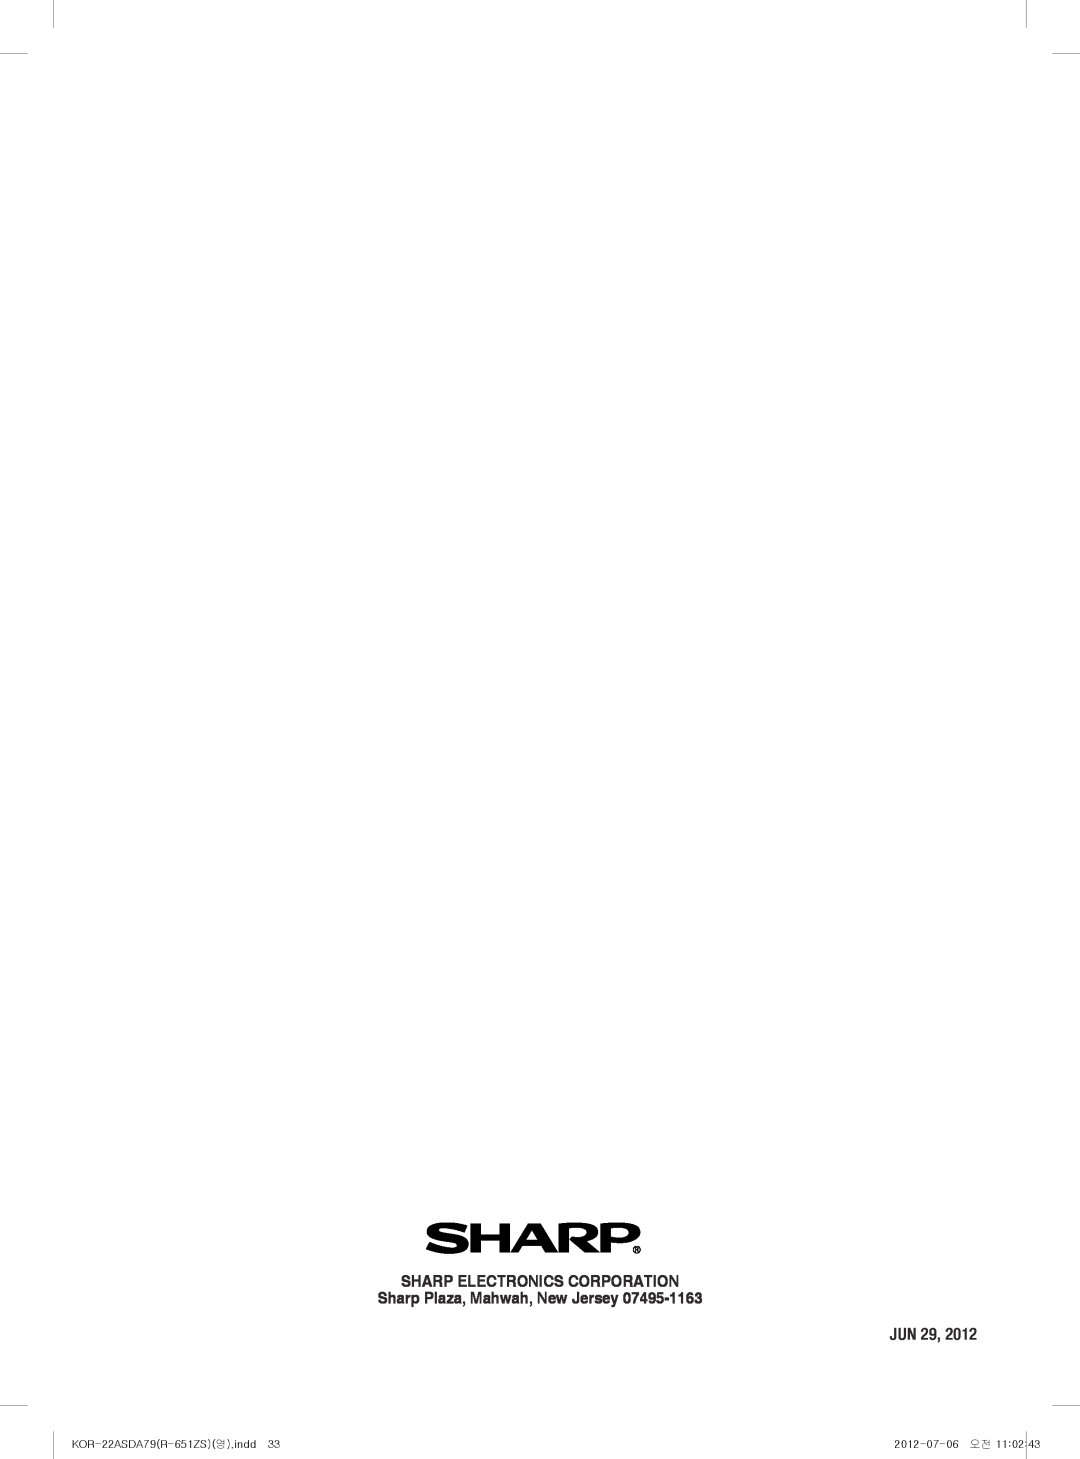 Sharp Sharp Electronics Corporation, Sharp Plaza, Mahwah, New Jersey, Jun, KOR-22ASDA79R-651ZS영.indd33, 2012-07-06 오전 